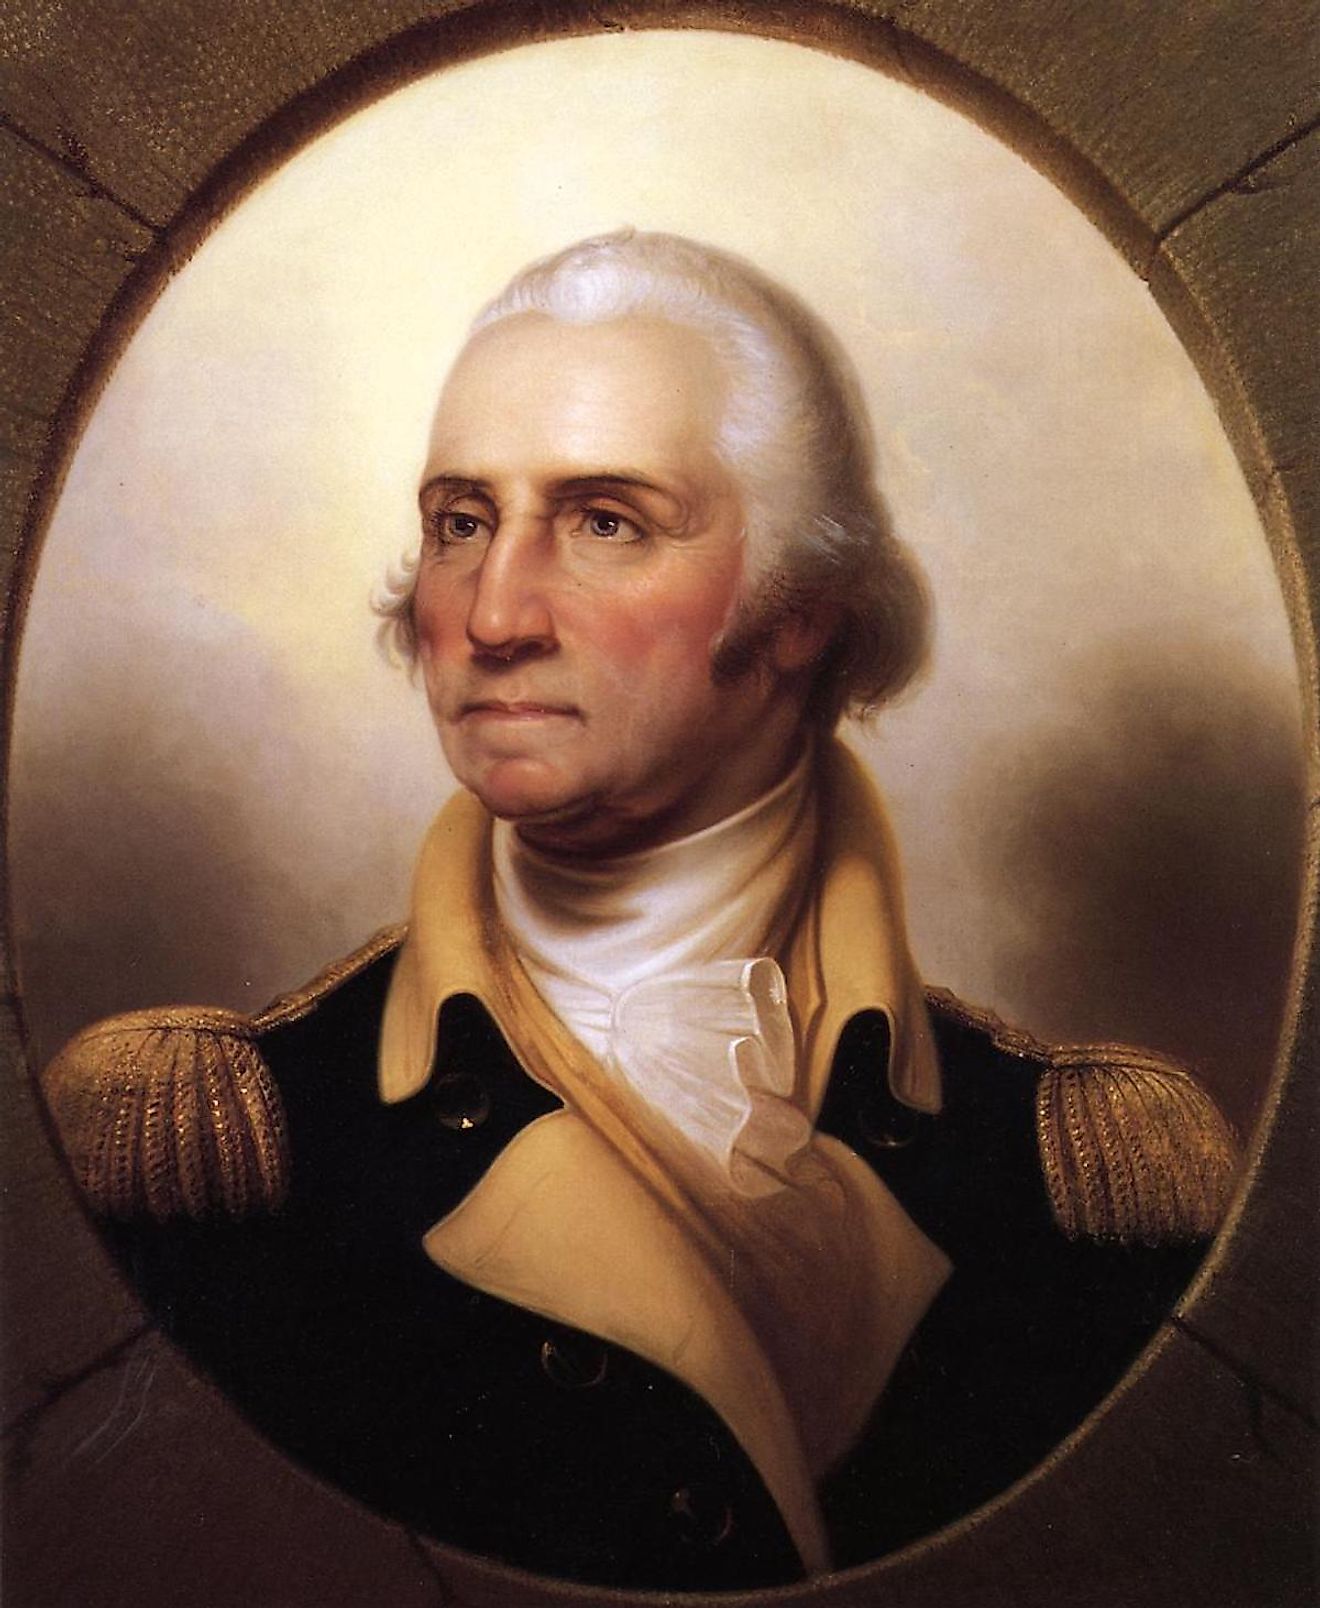 A portrait of George Washington. Image credit: Rembrandt Peale/Public domain